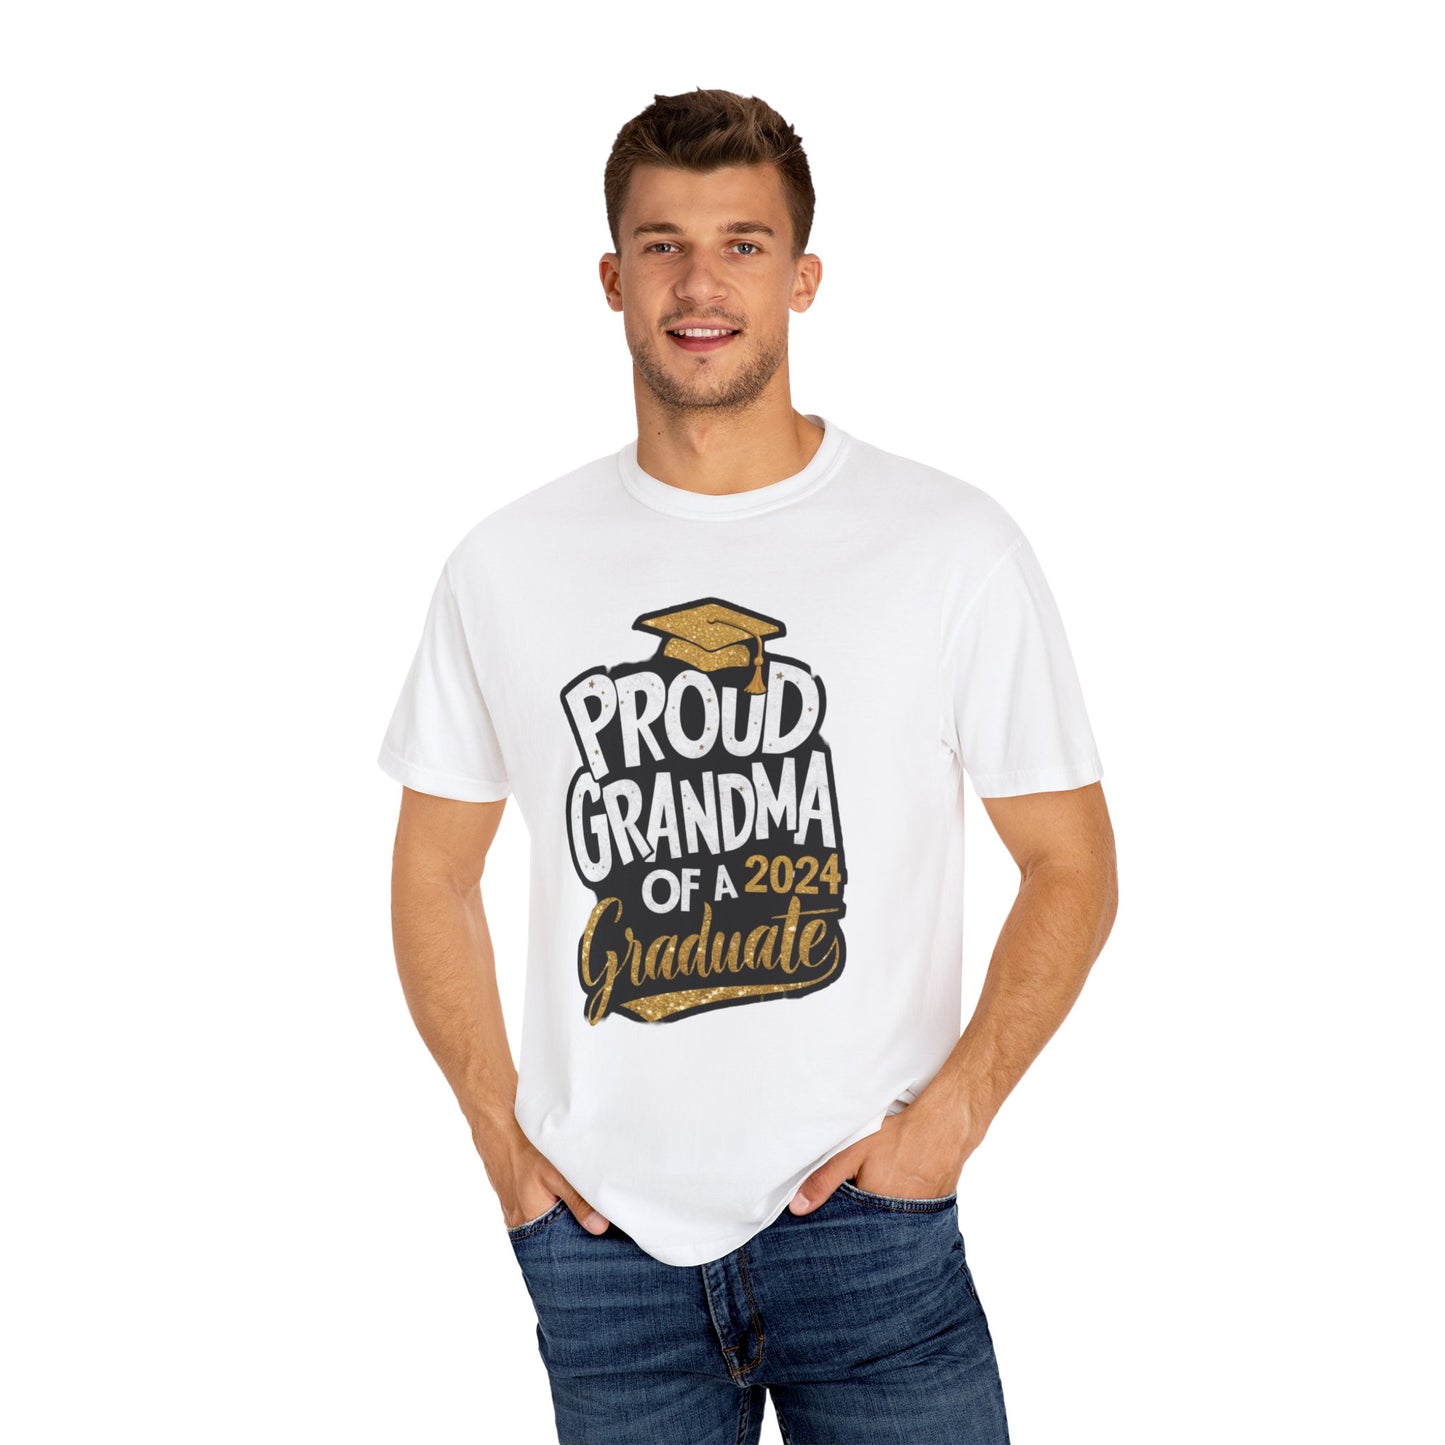 Proud of Grandma 2024 Graduate Unisex Garment-dyed T-shirt Cotton Funny Humorous Graphic Soft Premium Unisex Men Women White T-shirt Birthday Gift-24